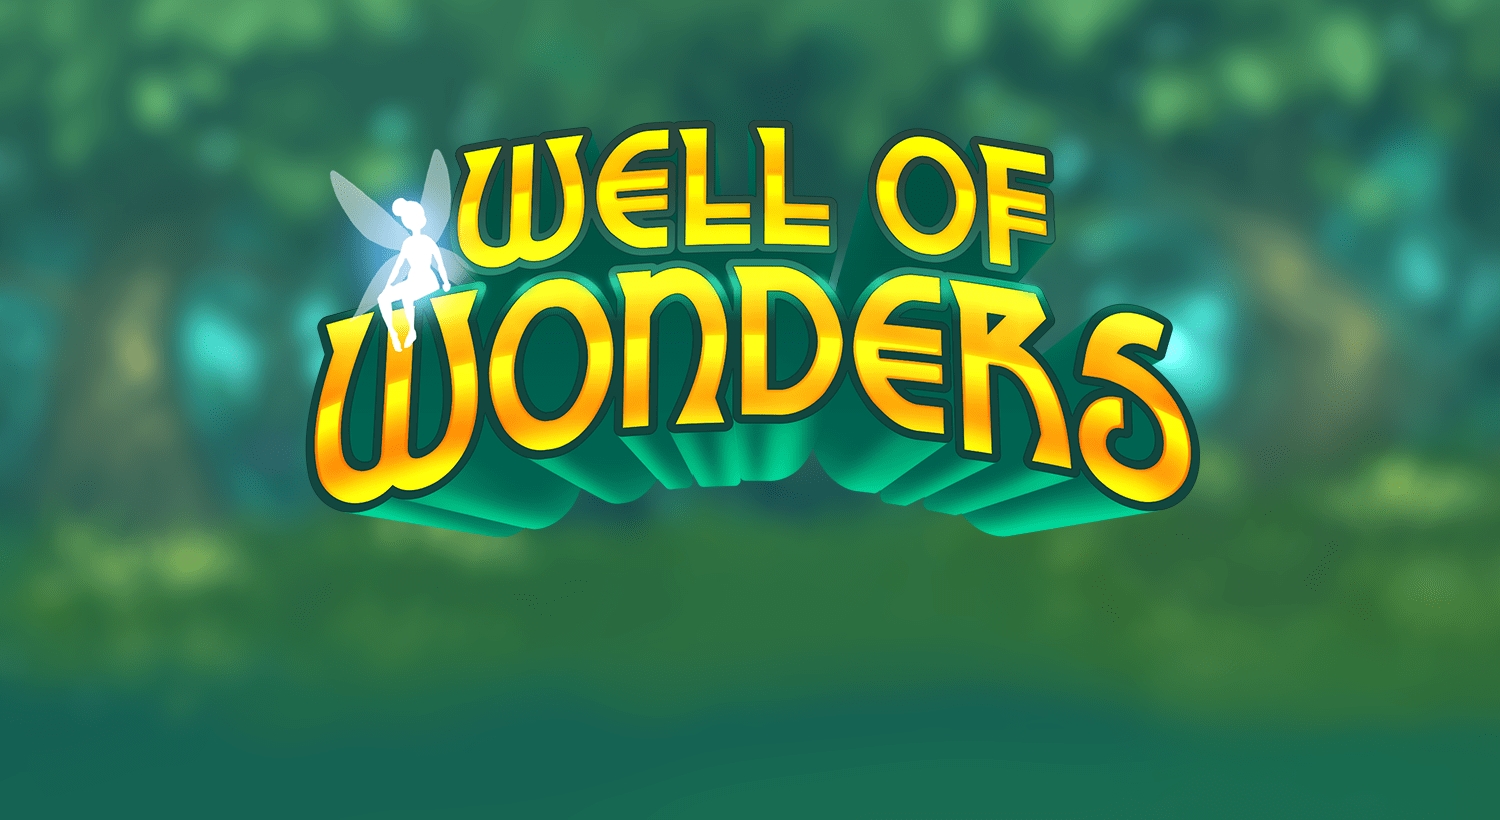 Well of wonders